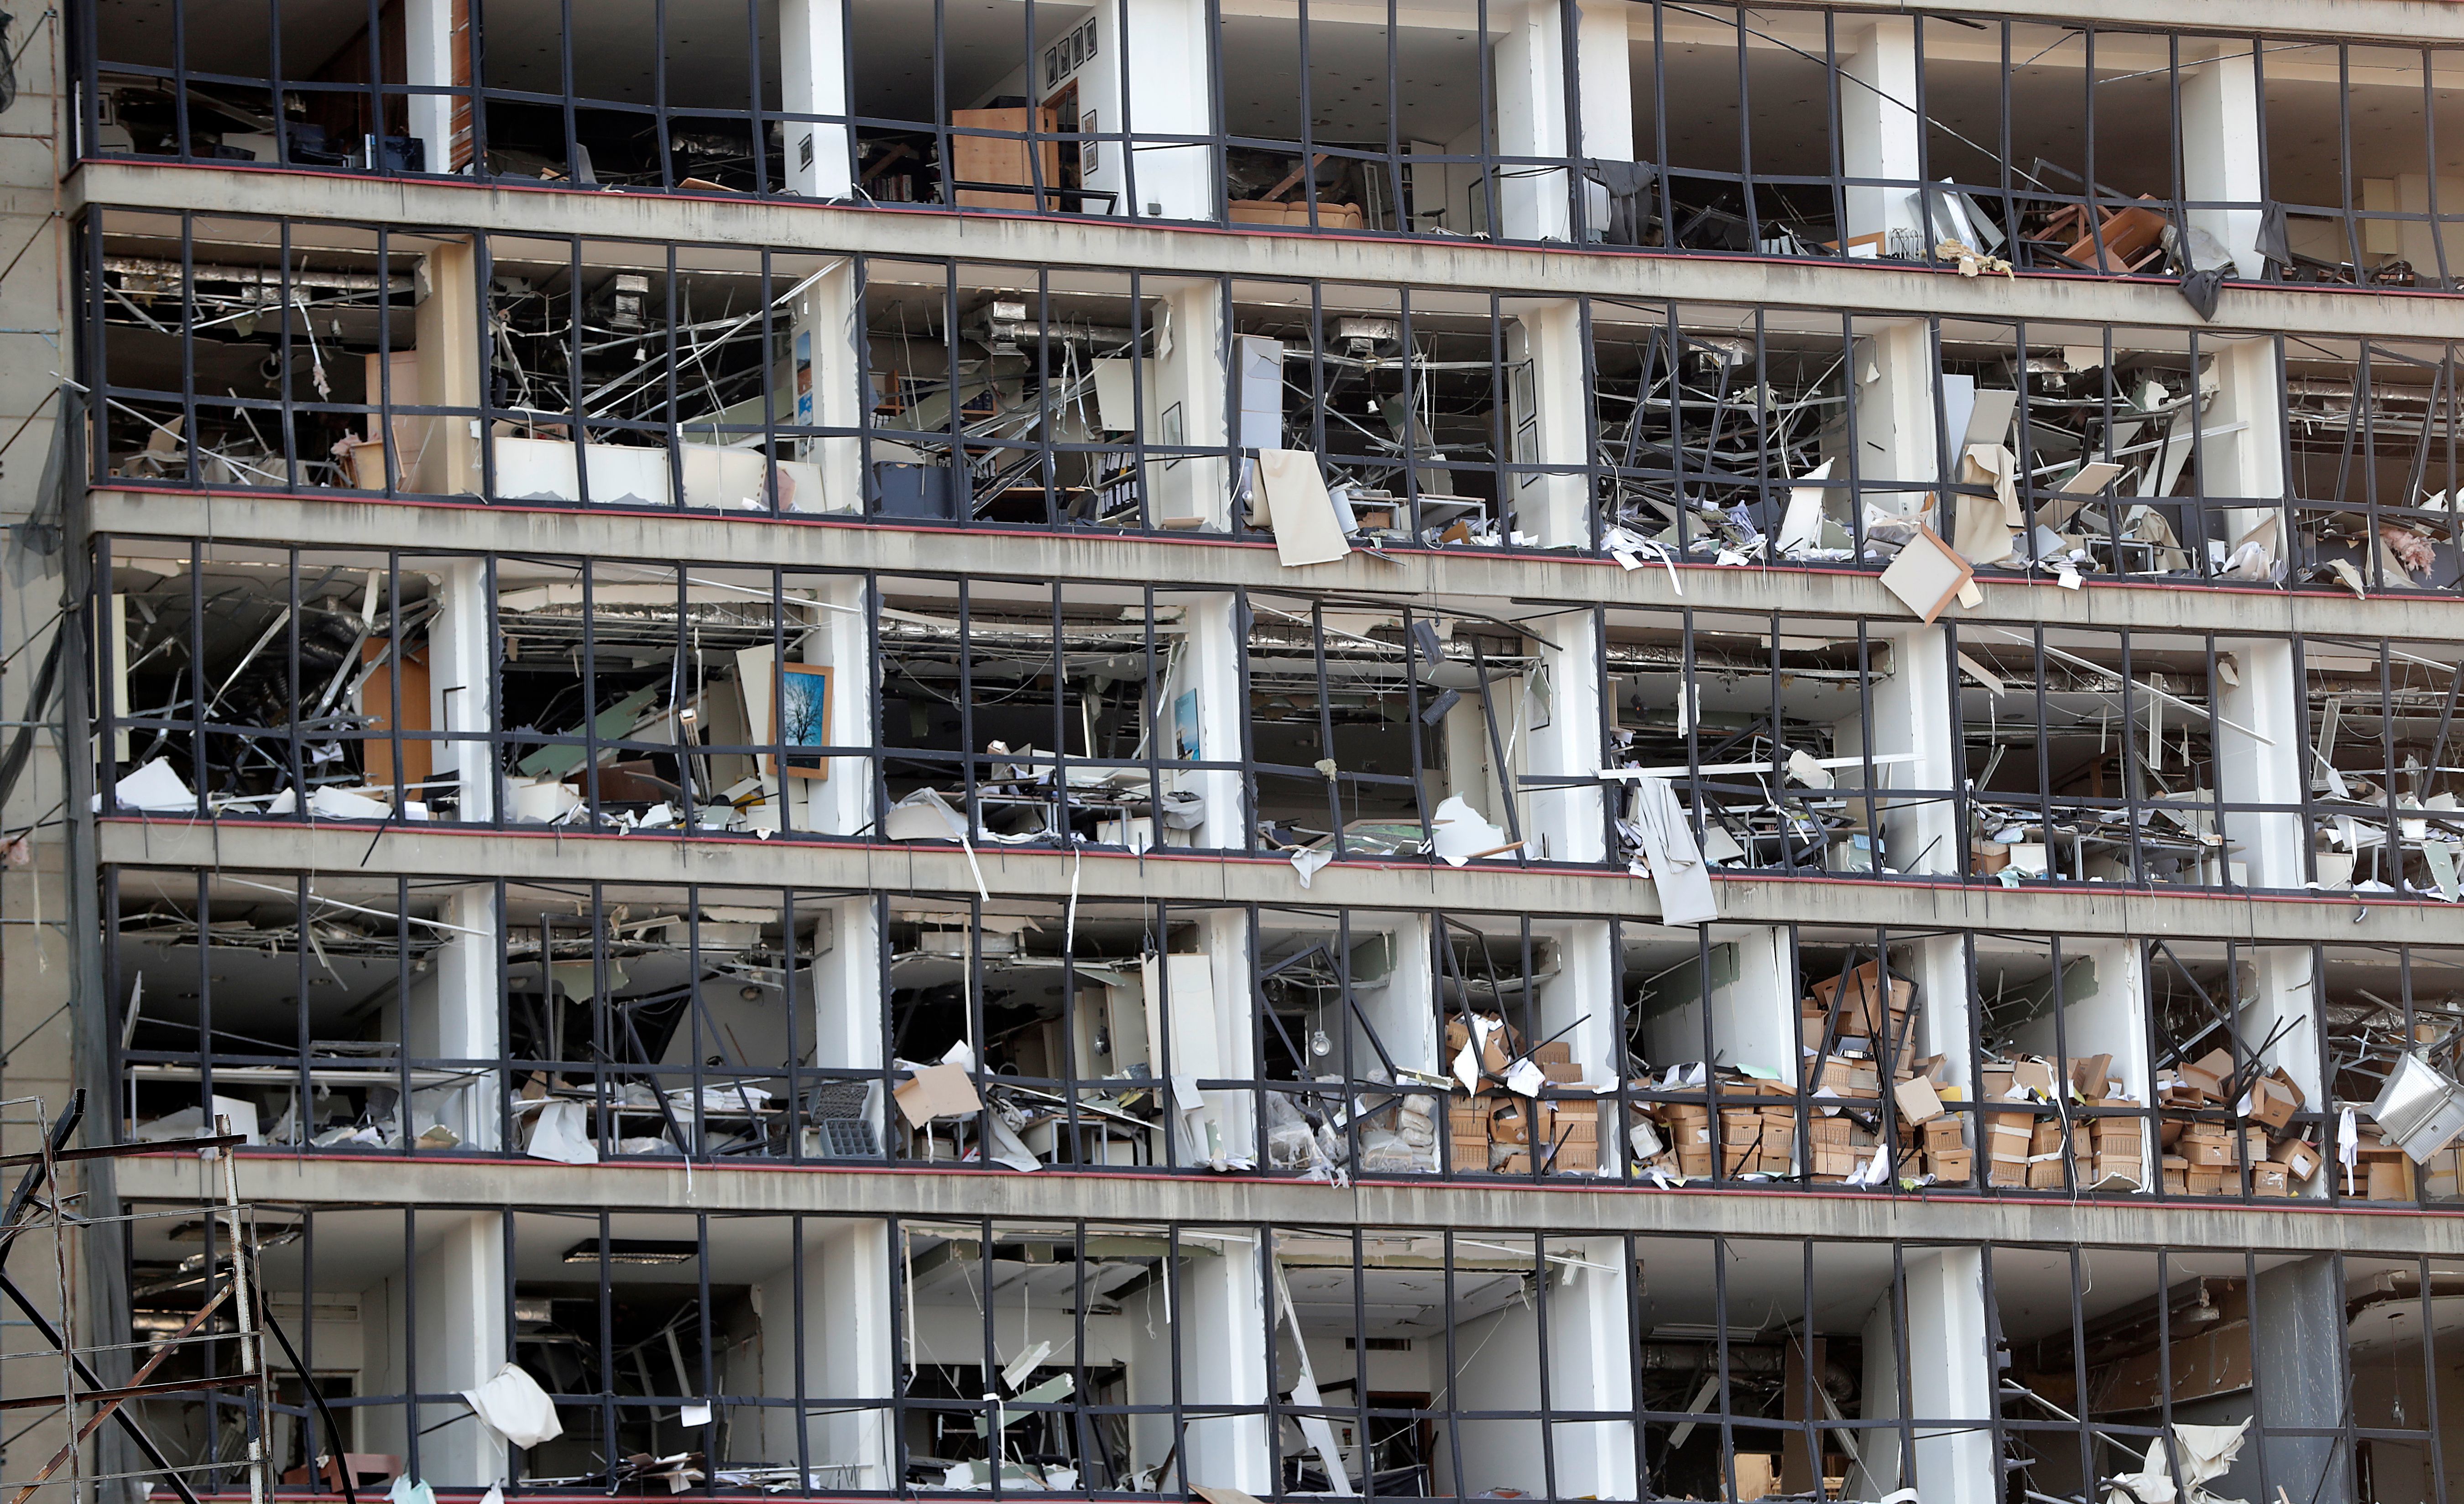 Neglijențele care au dus la explozia devastatoare din Beirut. Se va desfășura o anchetă internațională - Imaginea 5